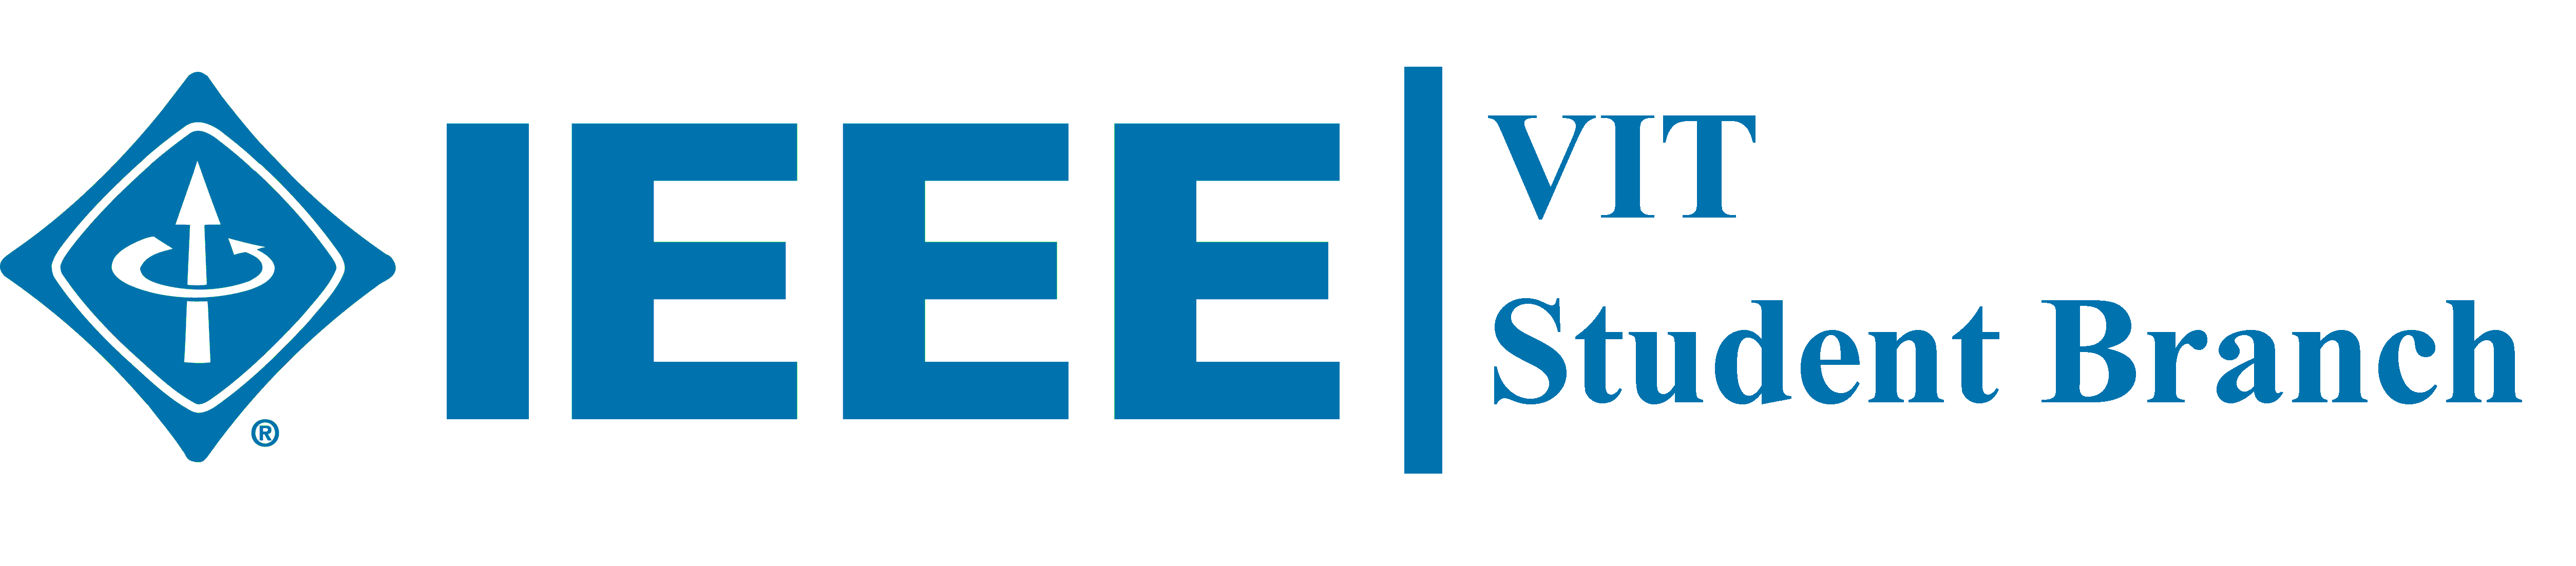 IEEE-VIT